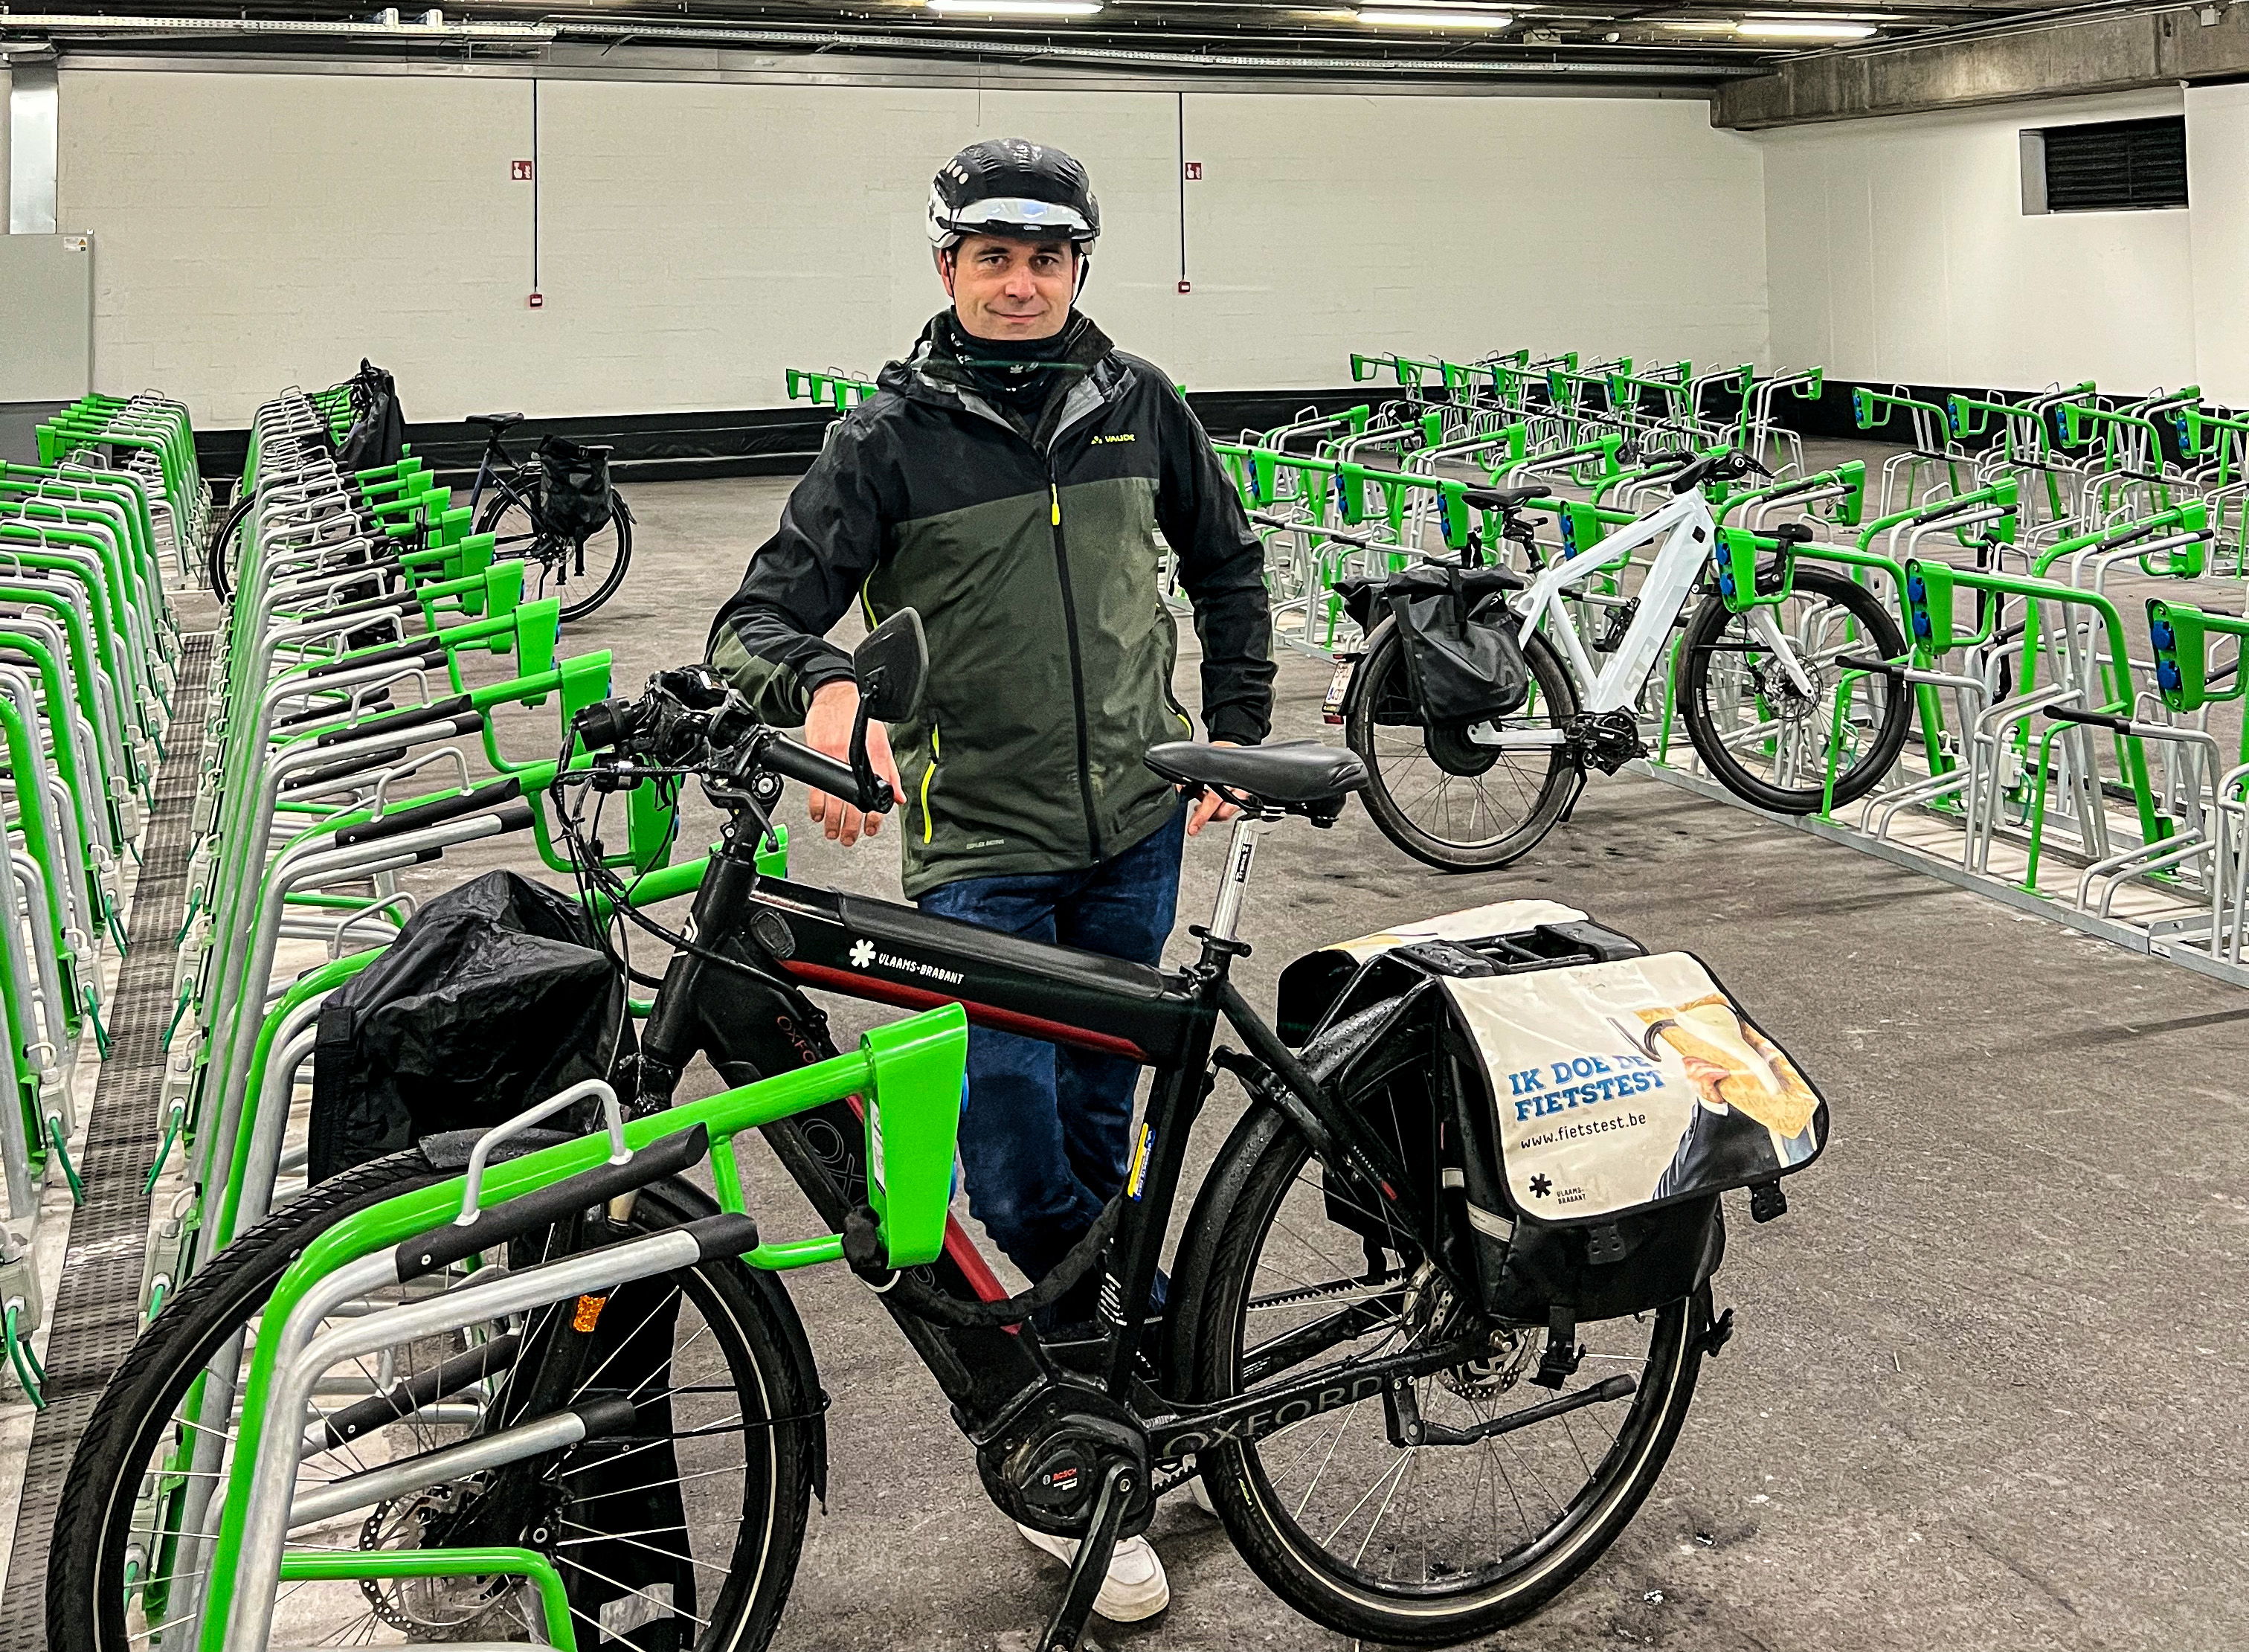 Steven Fagard startte op 13 maart als fietsmanager van Brussels Airport